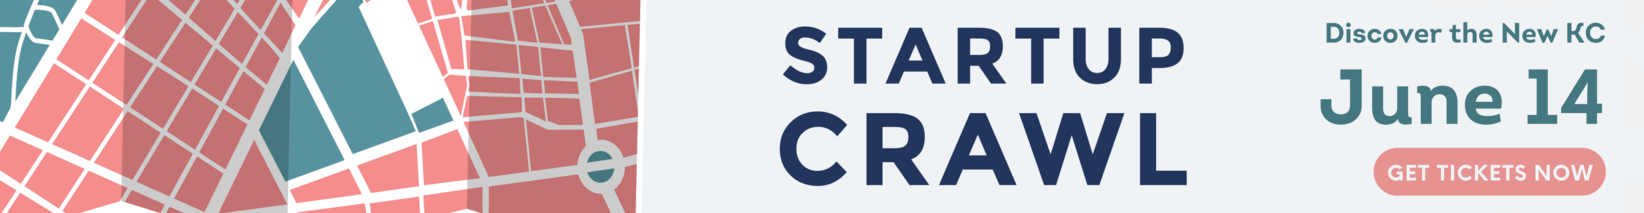 Startup Crawl 24